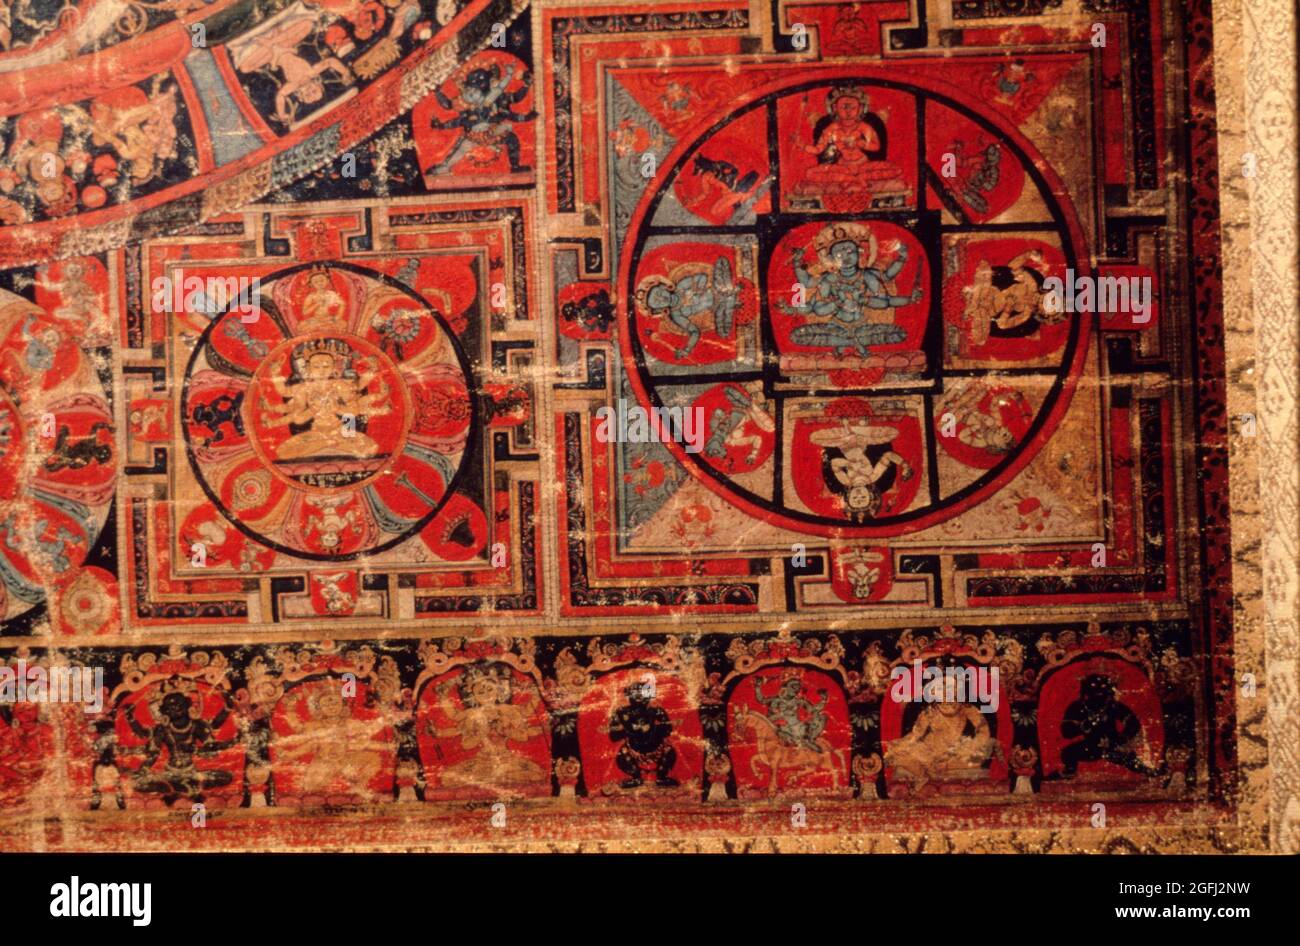 Tibet: Centre du Tibet 14ème. Century A.D. Sakyapa Monastère Hevajra Mandala cycle en bas à droite Mandalas. Banque D'Images